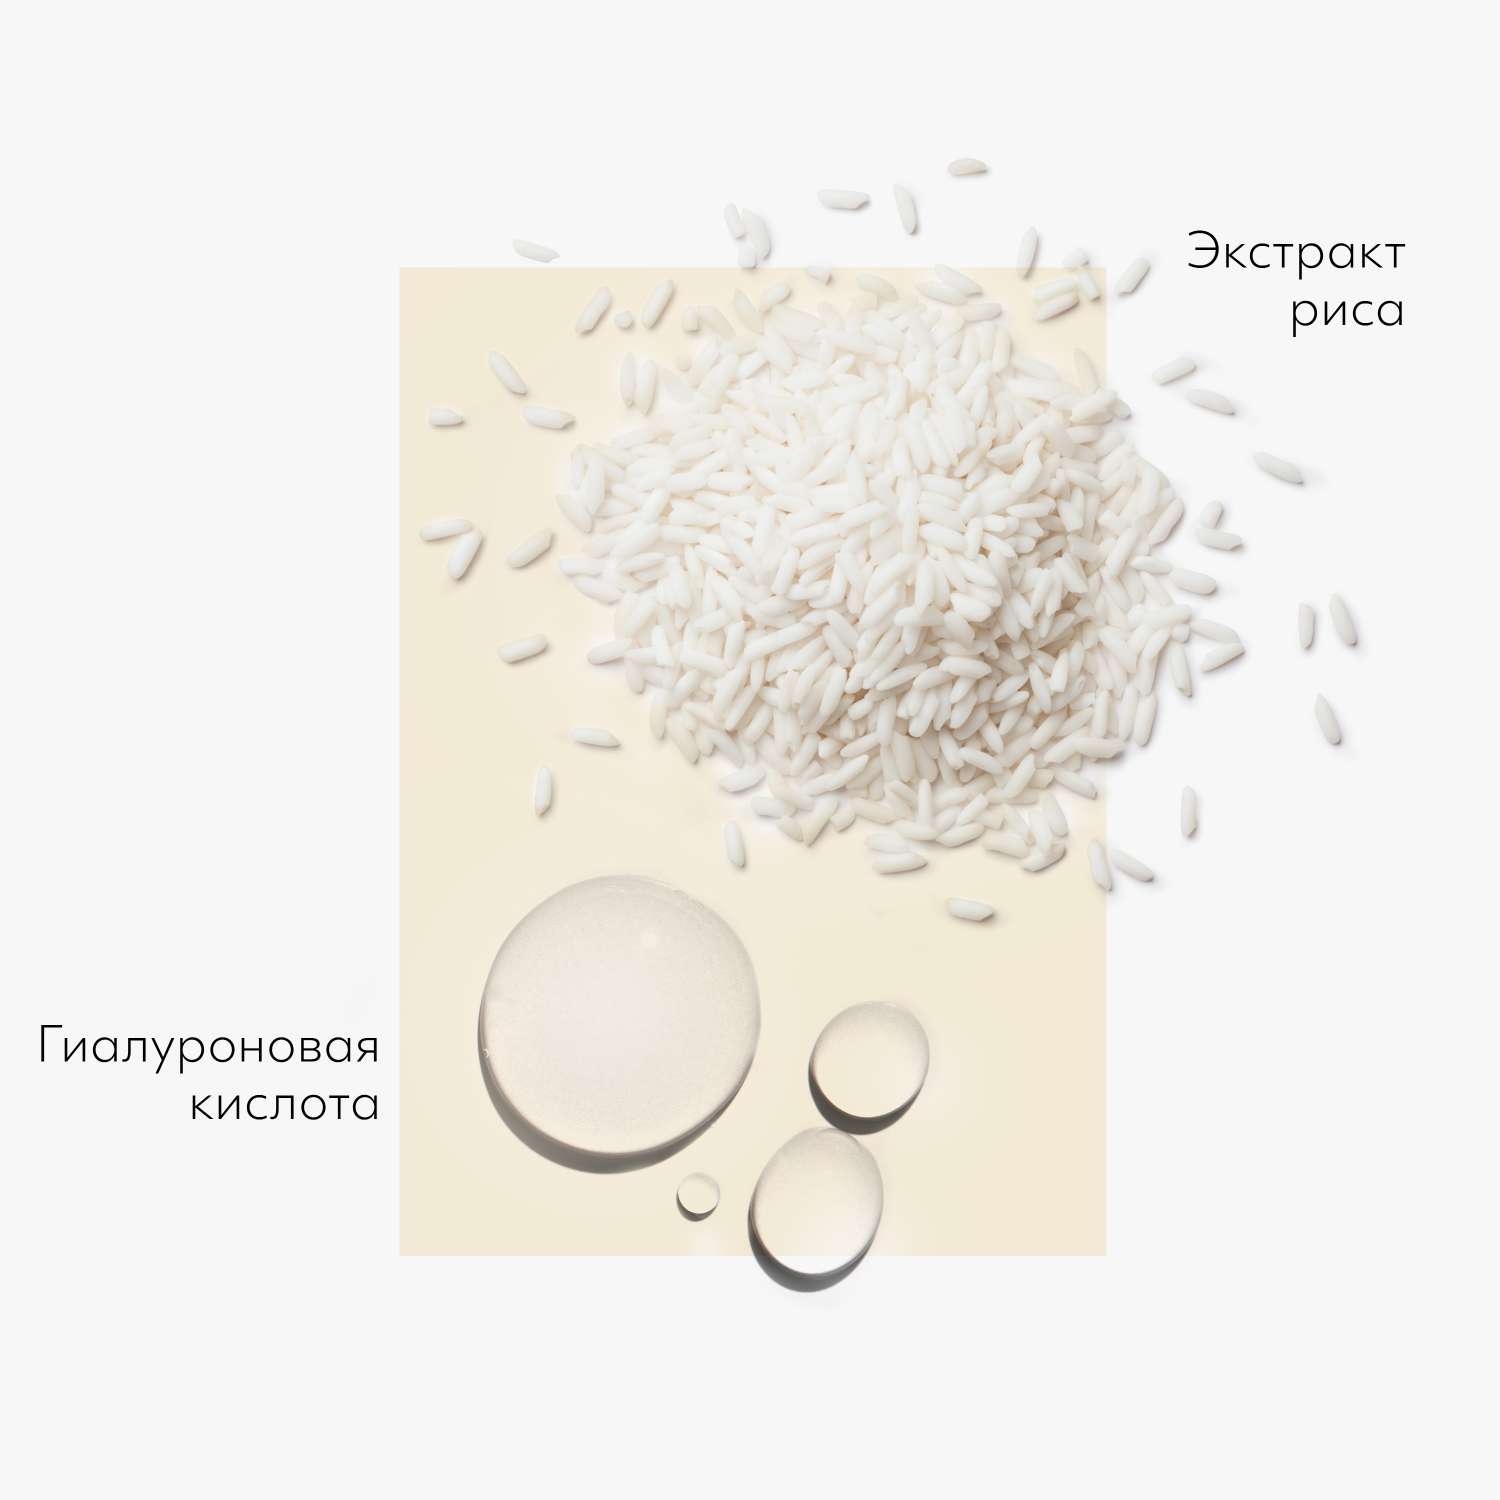 Маска тканевая MISSHA Airy Fit освежающая с экстрактом риса для огрубевшей тусклой кожи 19 г - фото 2